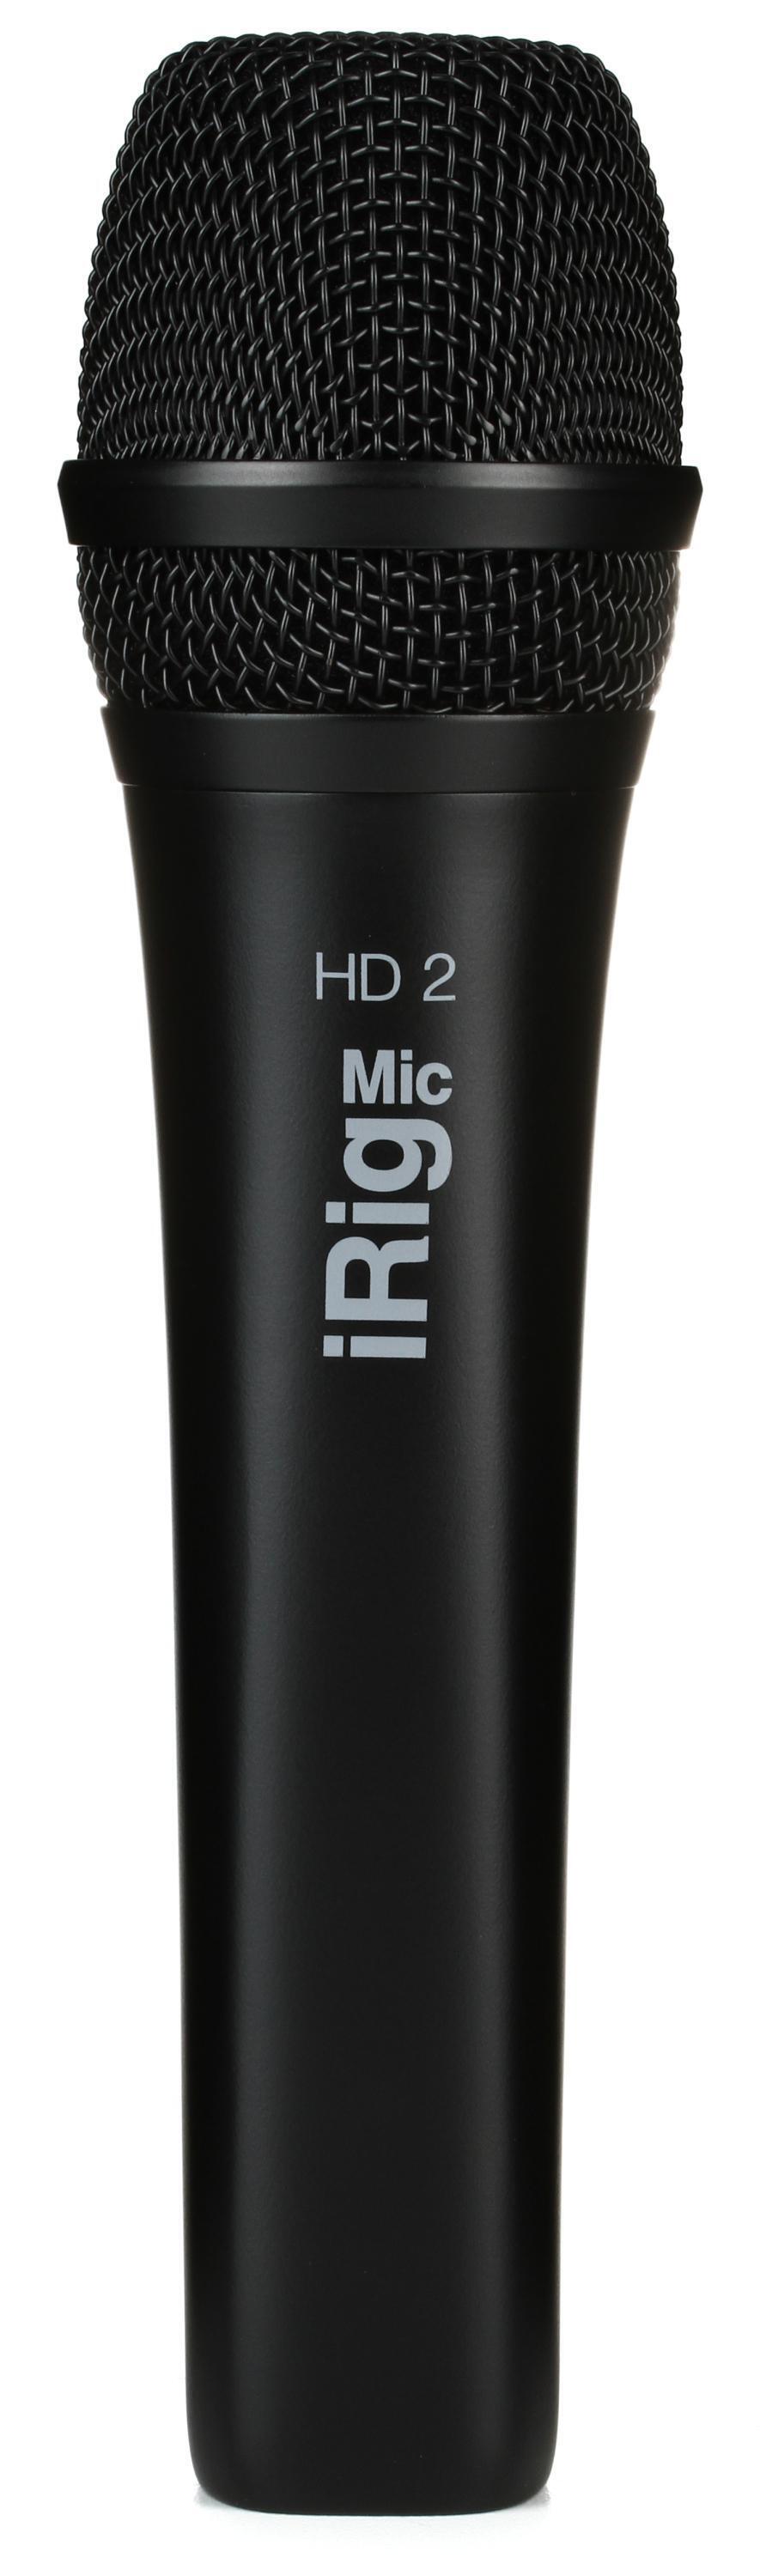 IK Multimedia iRig Mic HD 2 Handheld iOS/USB Microphone